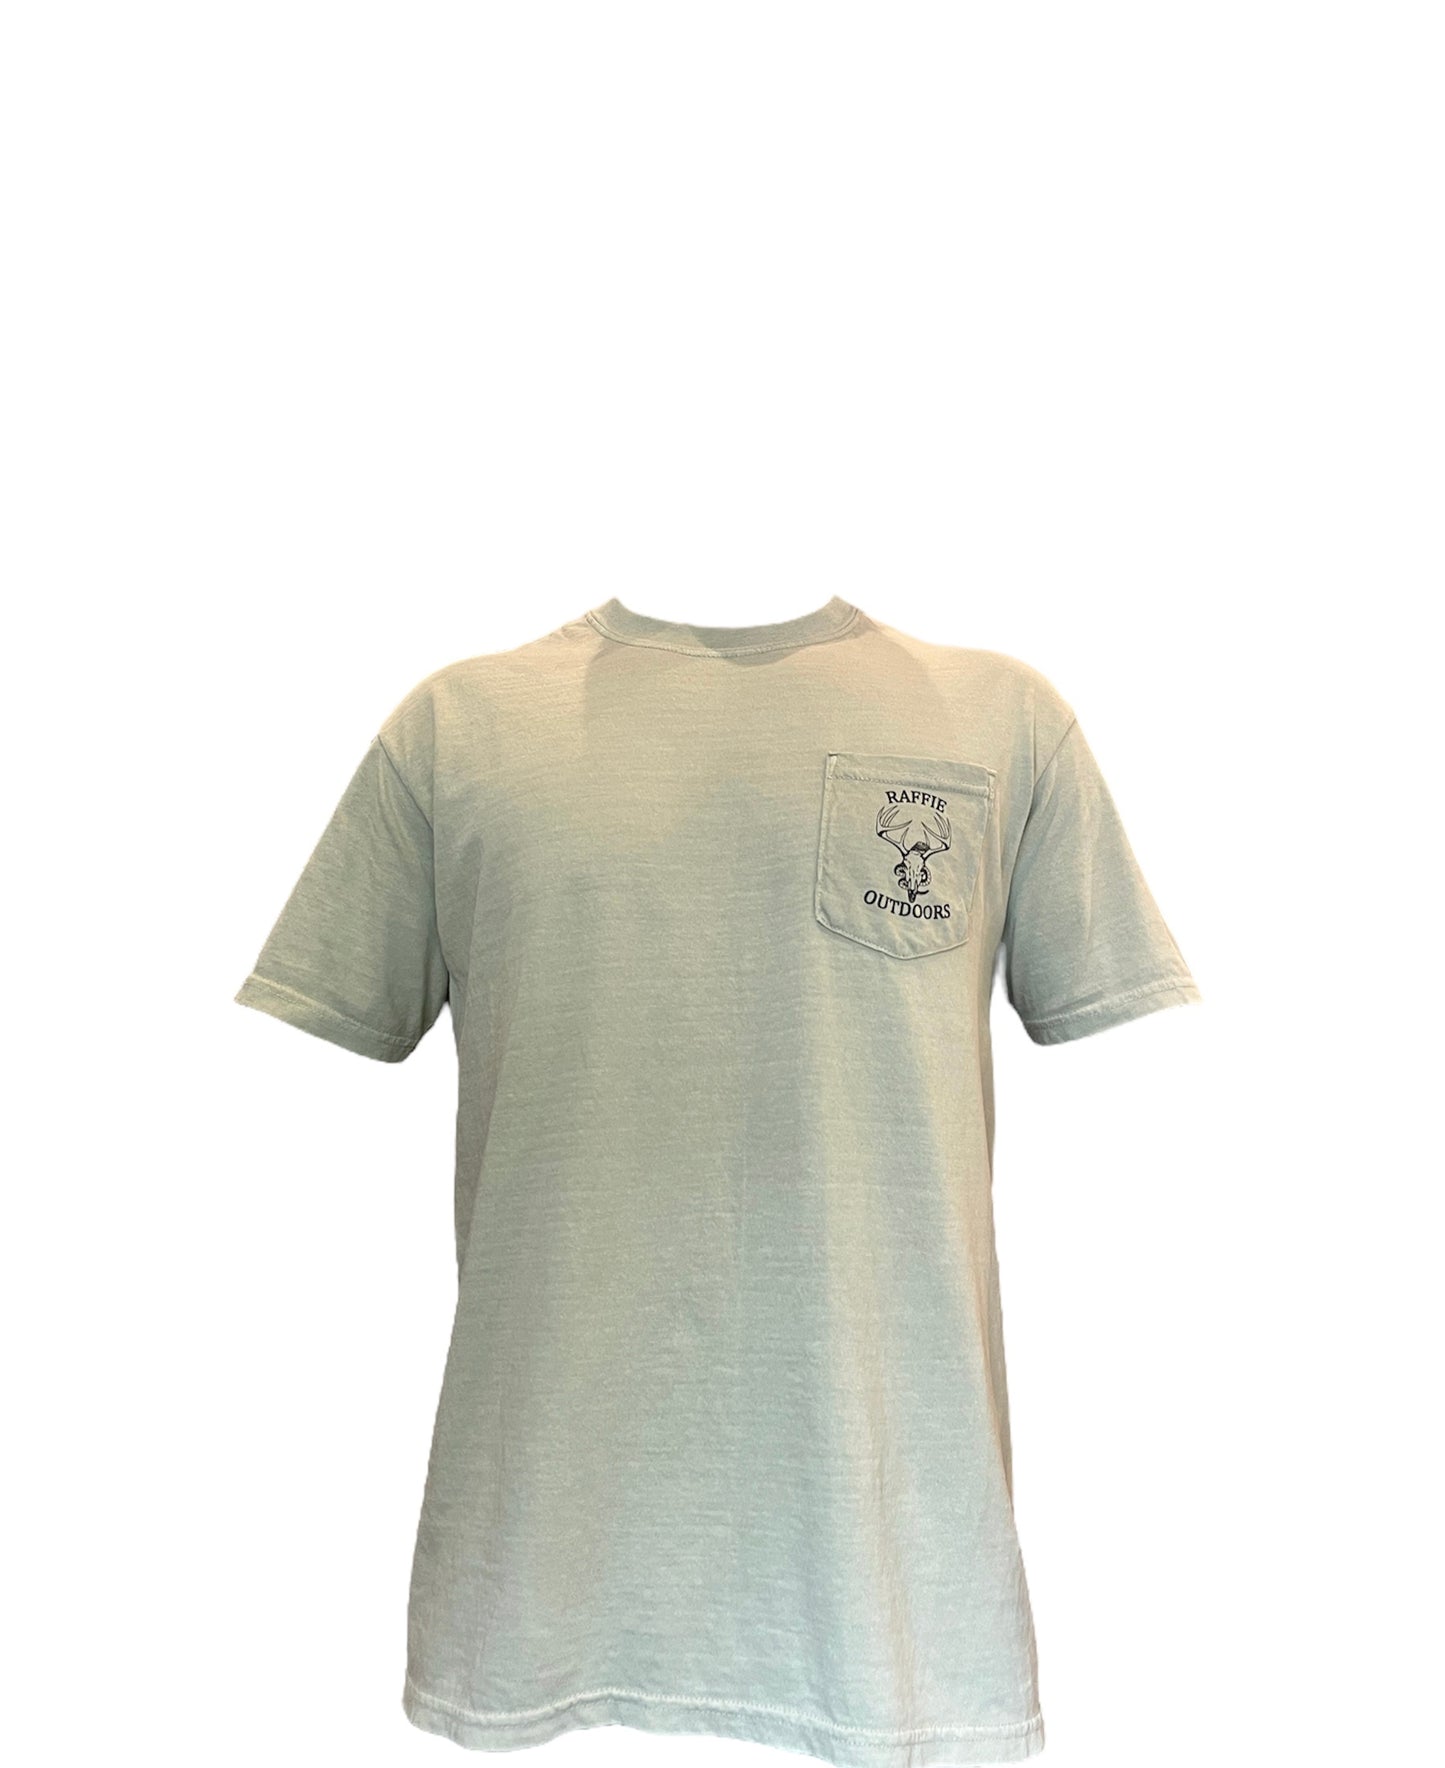 Raffie Outdoors Short Sleeve T-Shirt